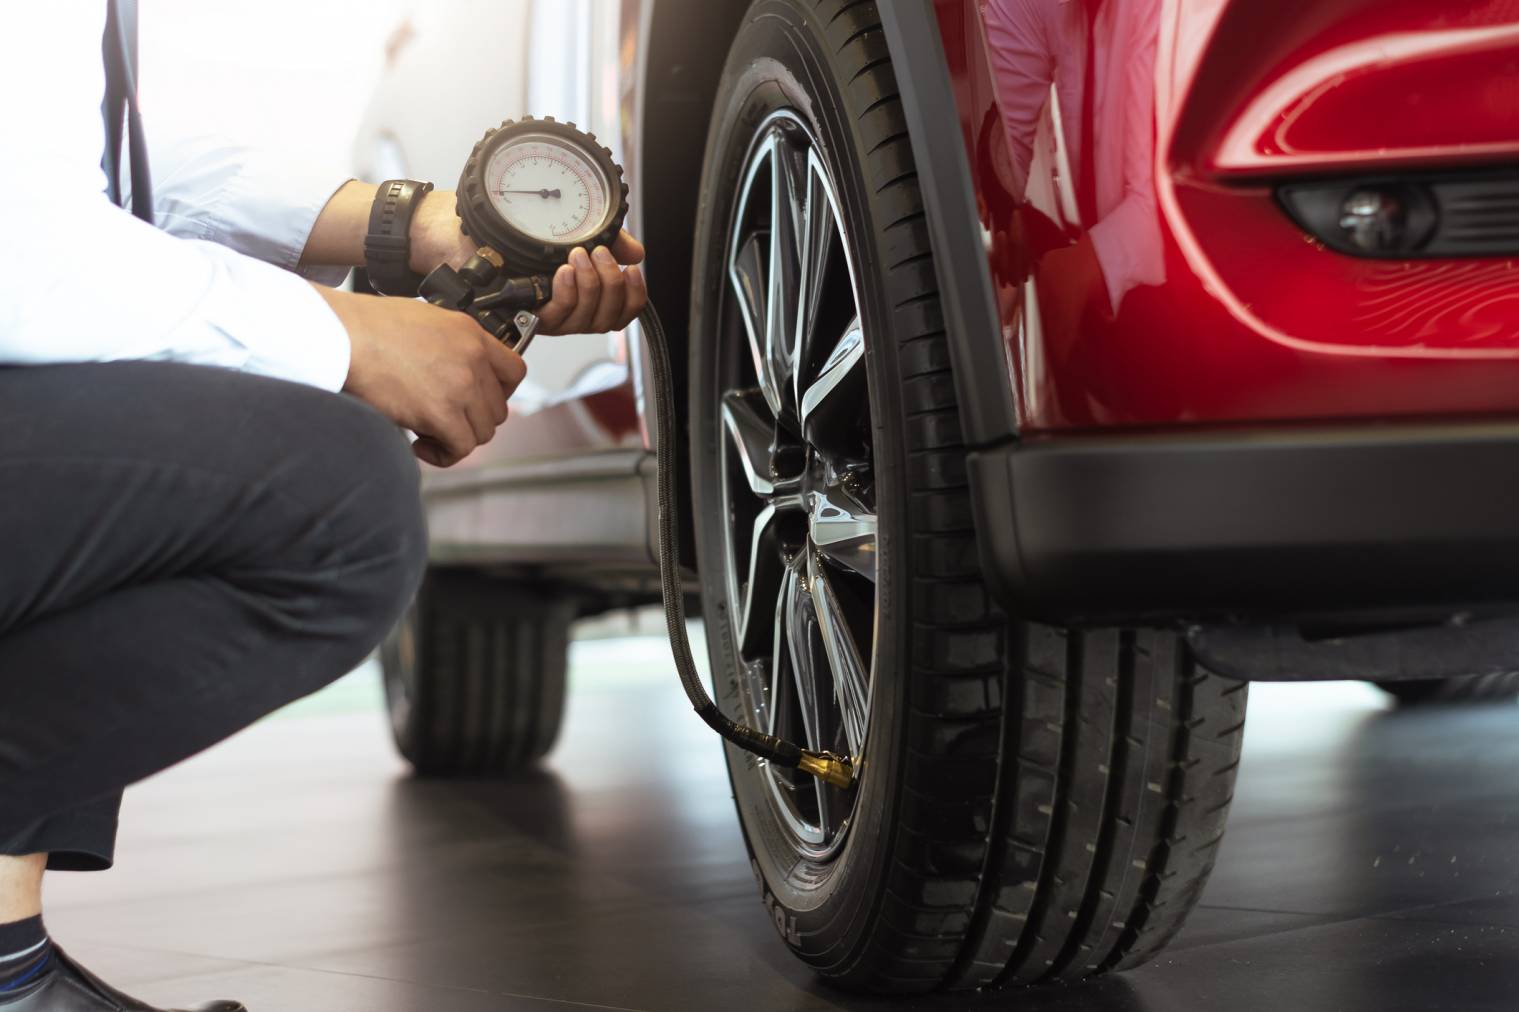 Pression des pneus : à quelle fréquence la vérifiez-vous ?